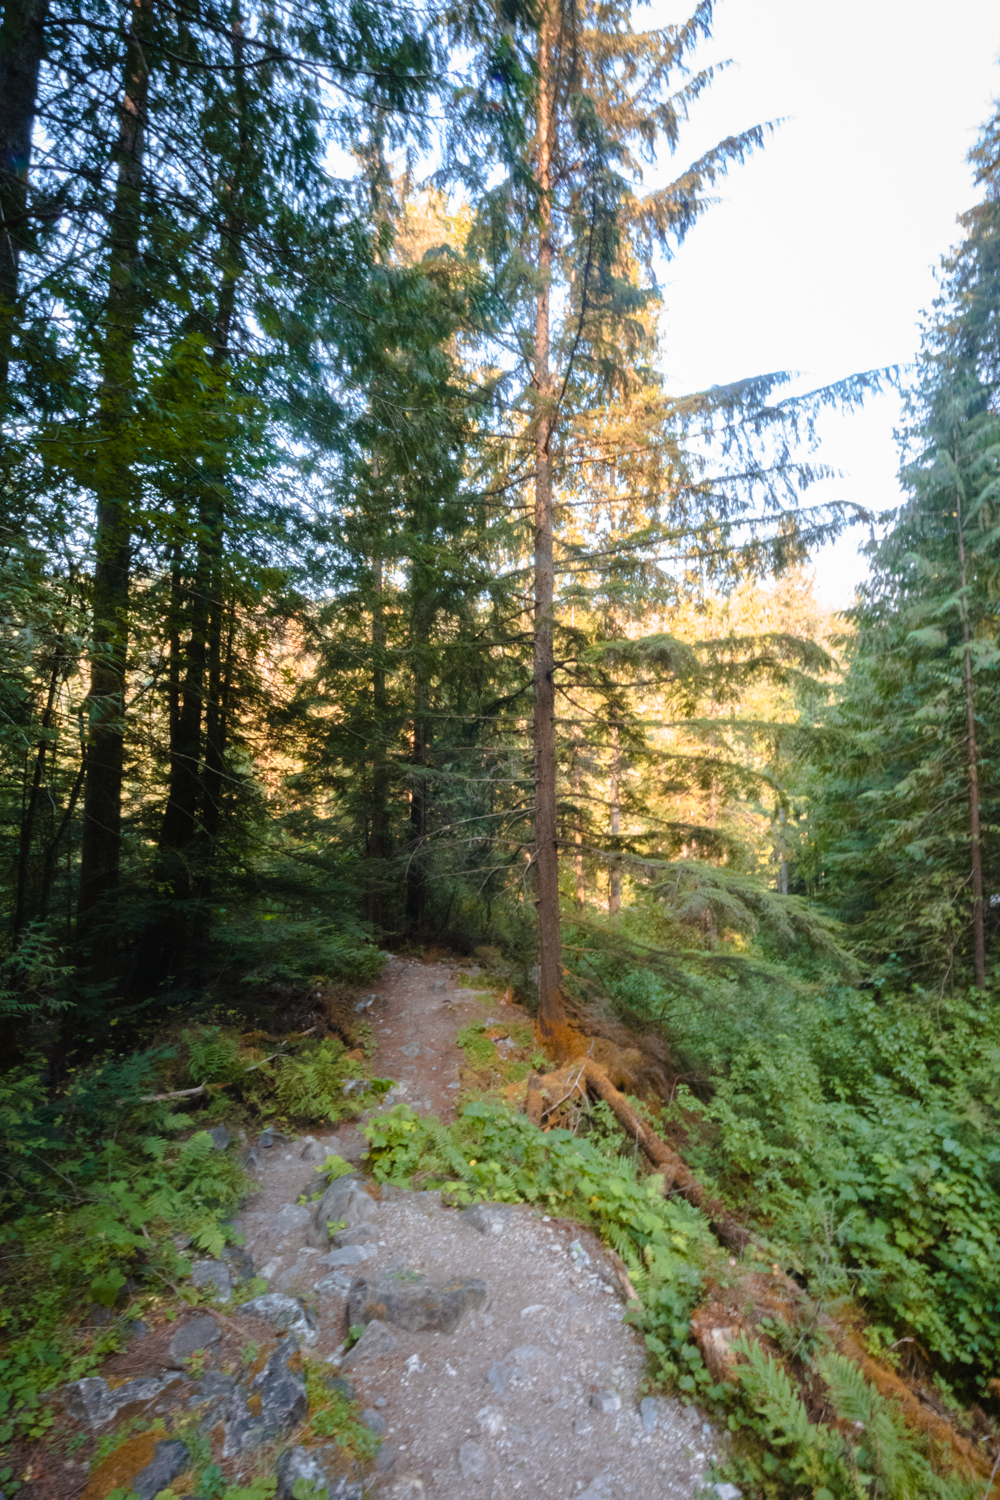 Dirt trail through a forest